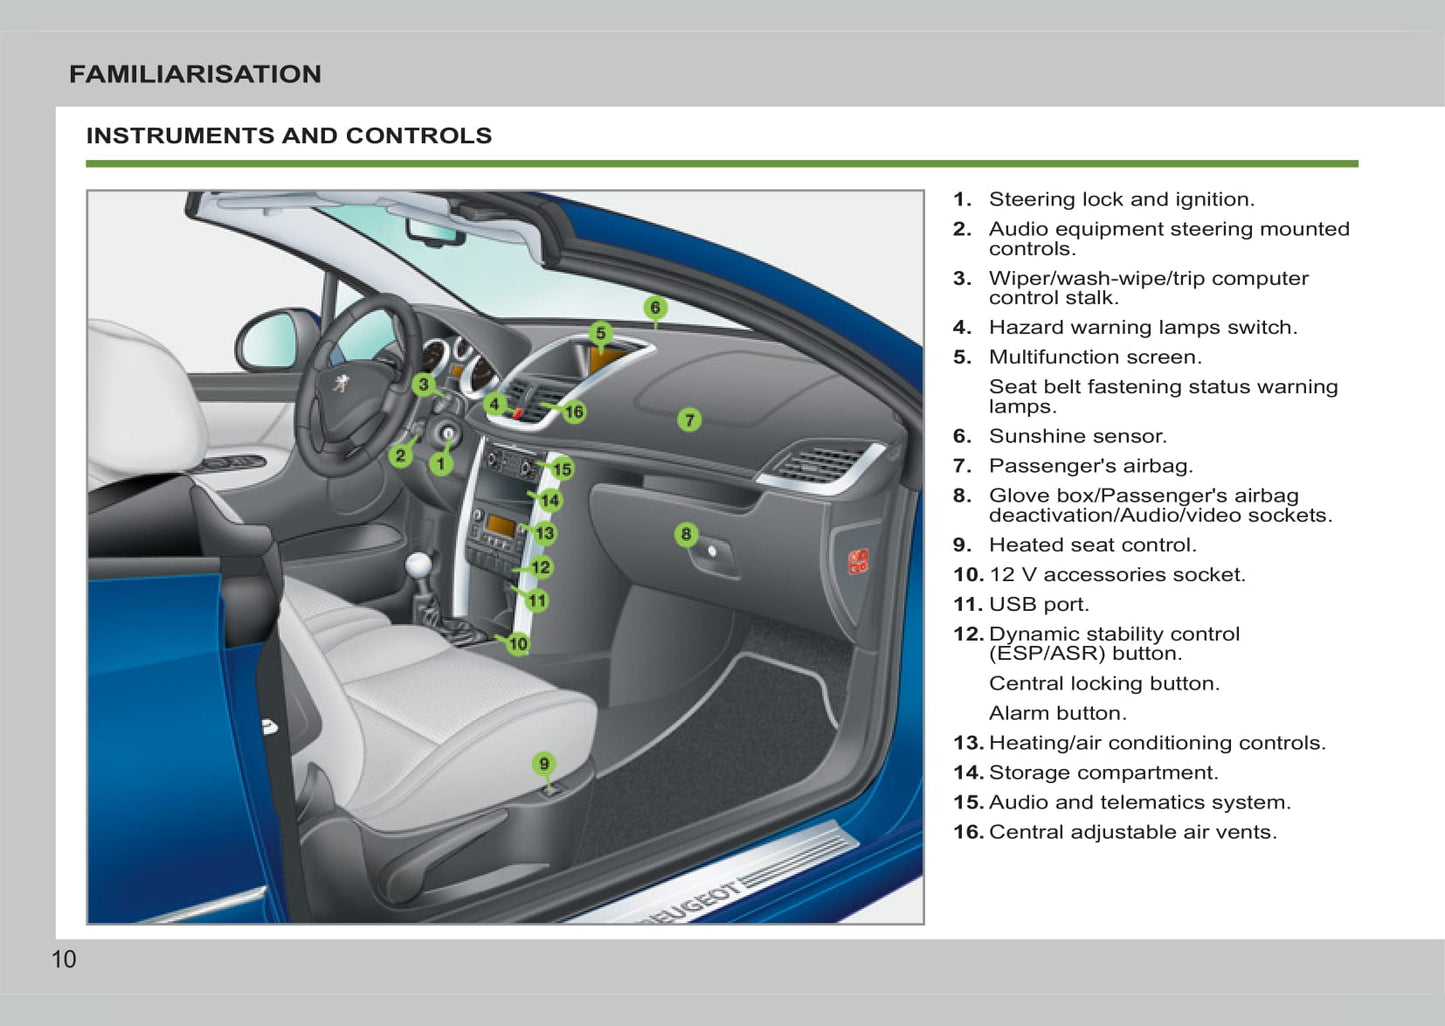 2011-2014 Peugeot 207 CC Bedienungsanleitung | Deutsch